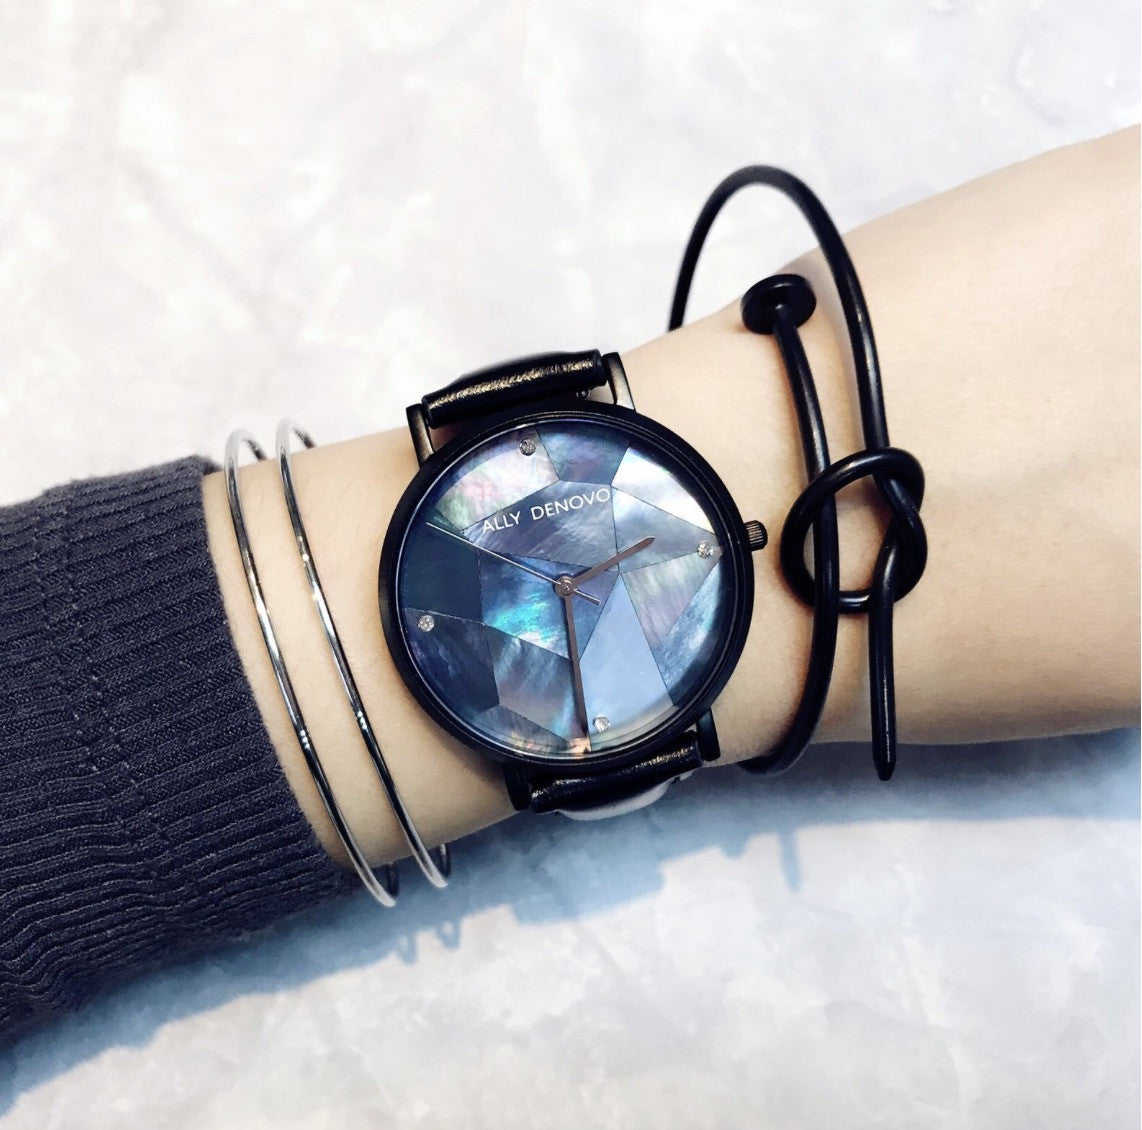 Gaia pearl皮革腕錶-藍色菱形琉璃黑框黑色真皮錶帶 AF5003.5